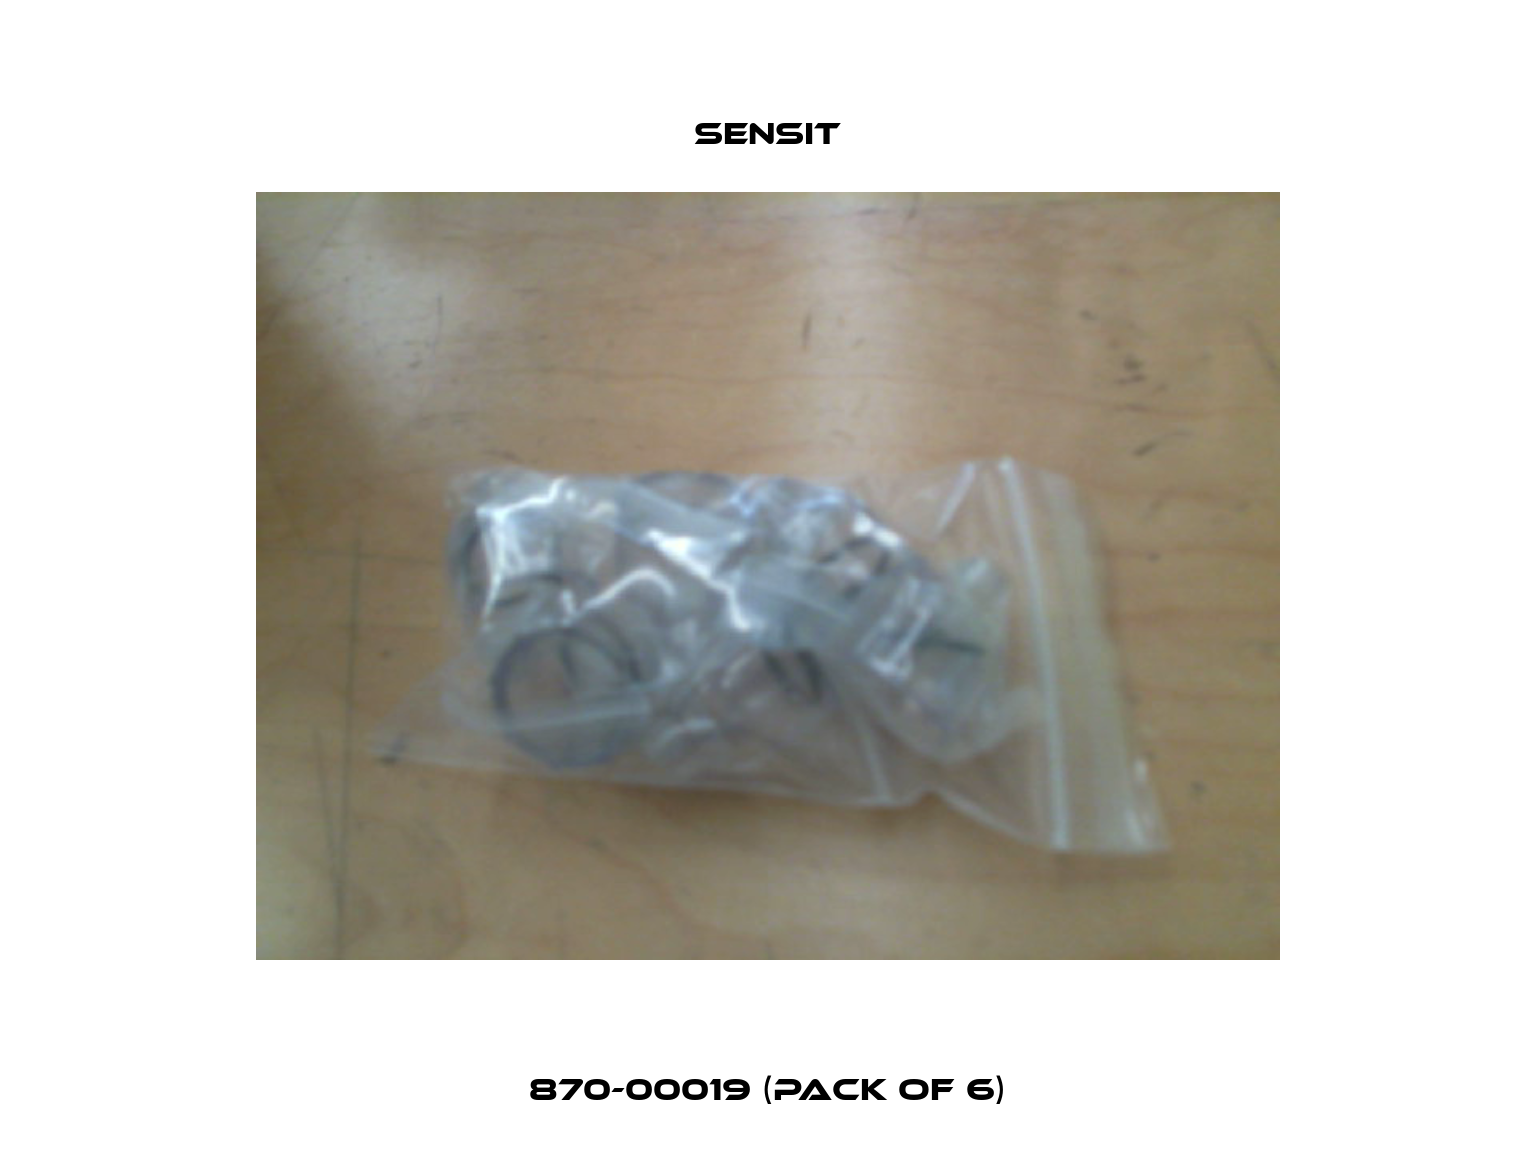 870-00019 (Pack of 6) Sensit